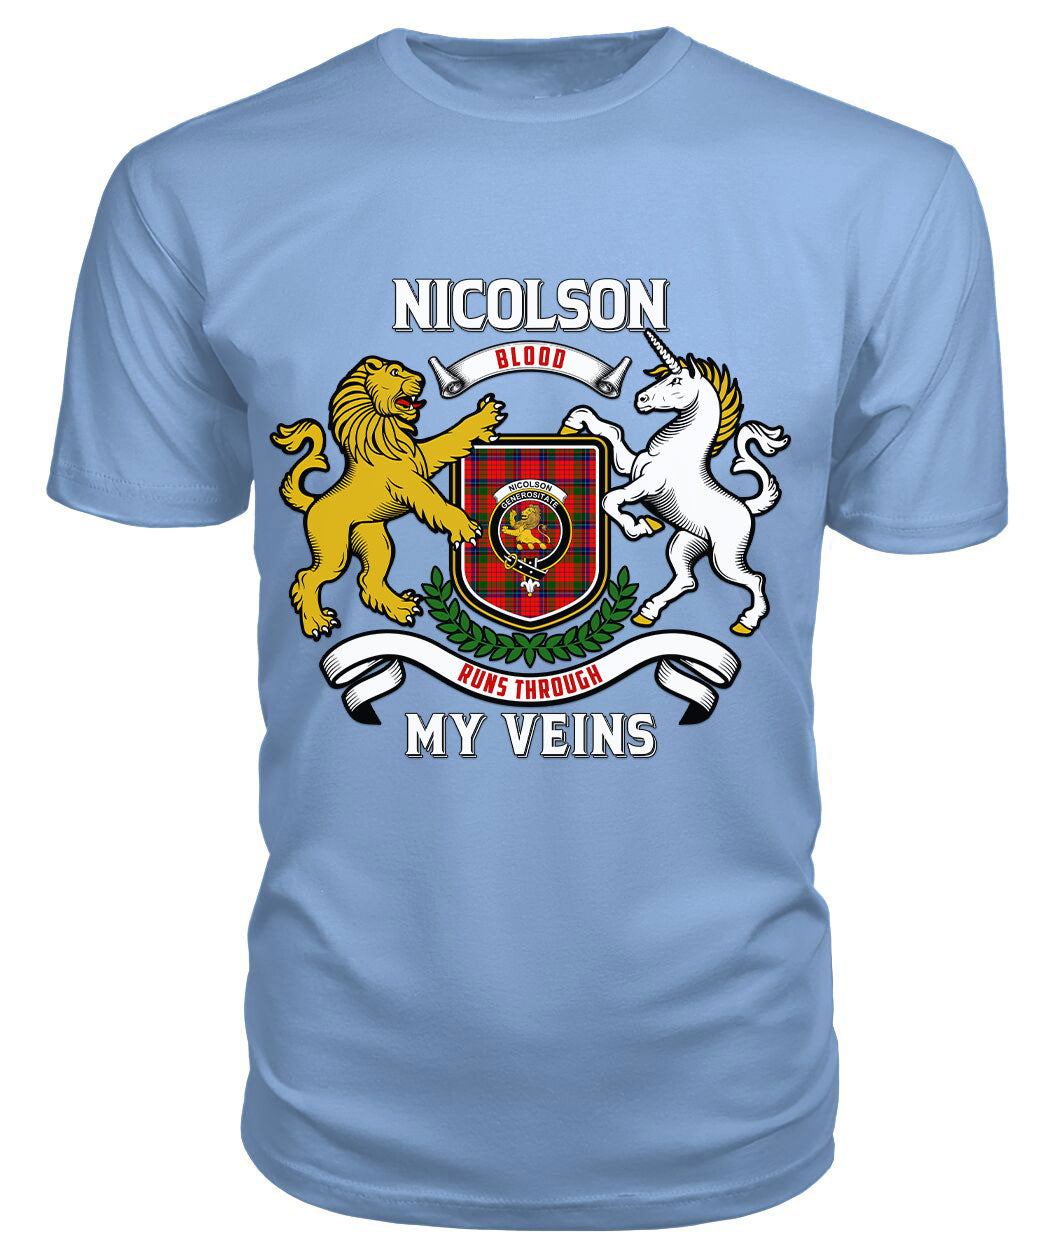 Nicolson Modern Tartan Crest 2D T-shirt - Blood Runs Through My Veins Style